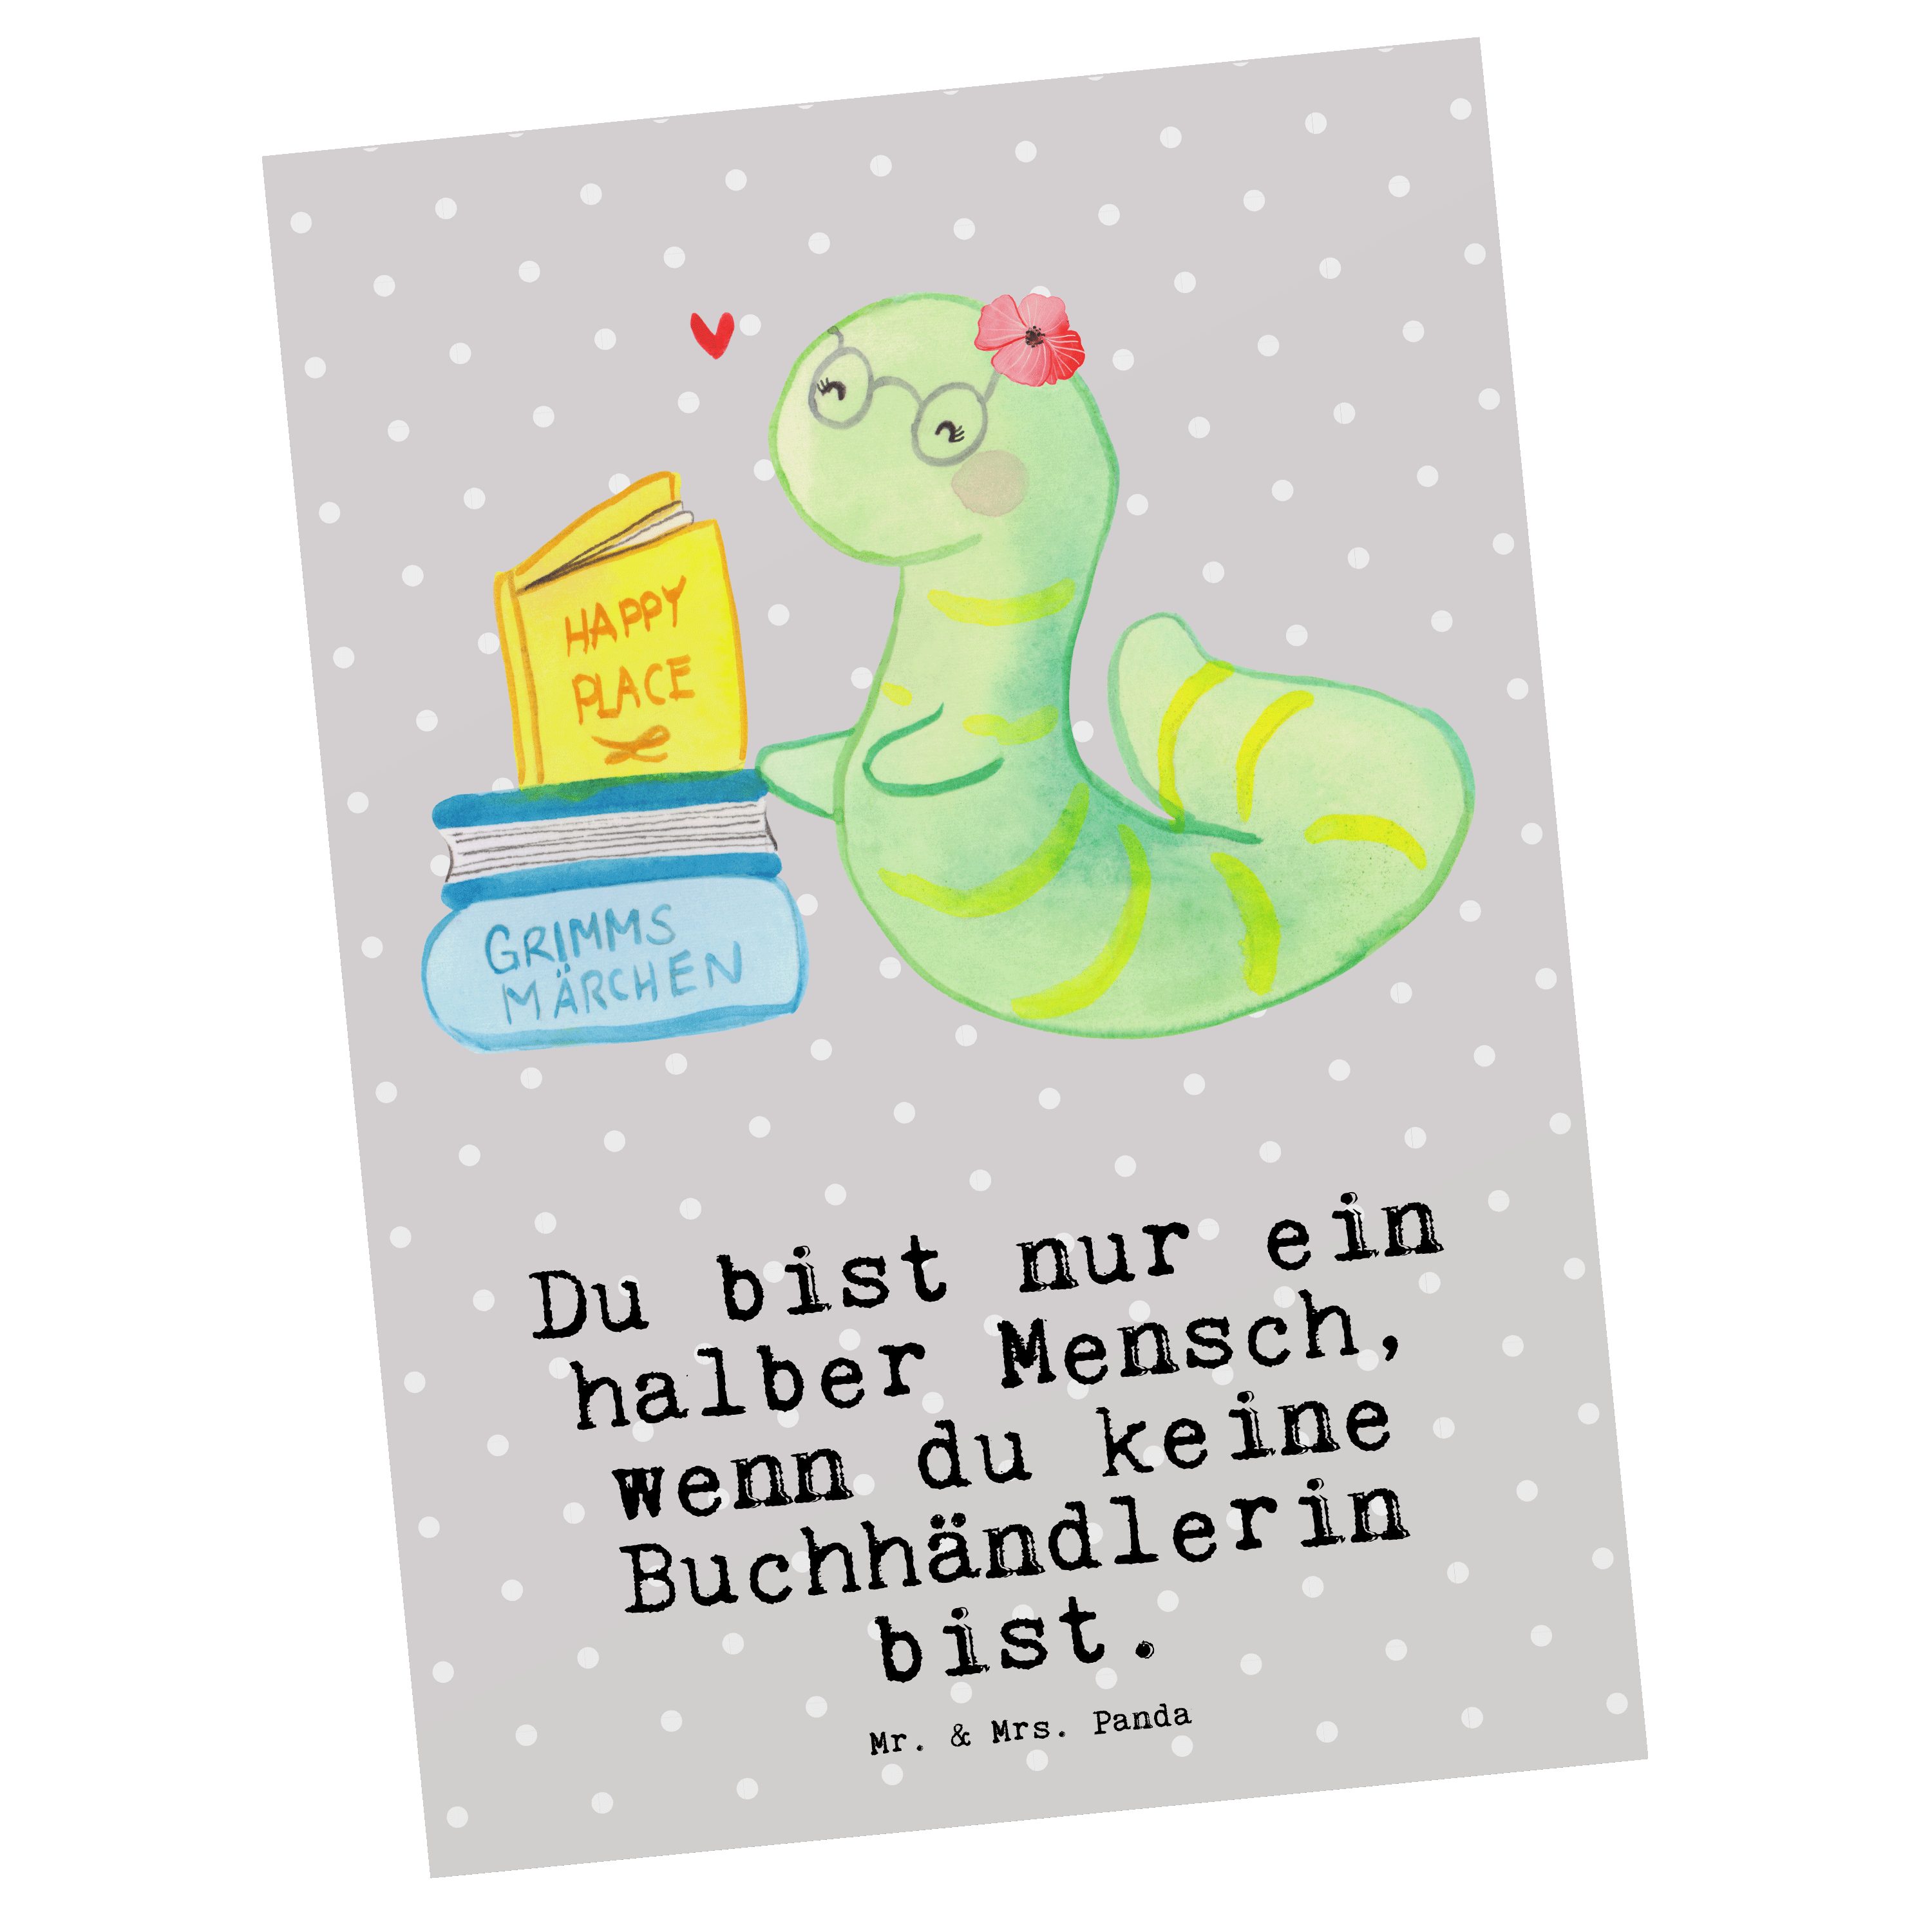 Grau Bibliot Panda Bücherwurm, Buchhändlerin - mit Geschenk, Herz & Mrs. - Postkarte Pastell Mr.